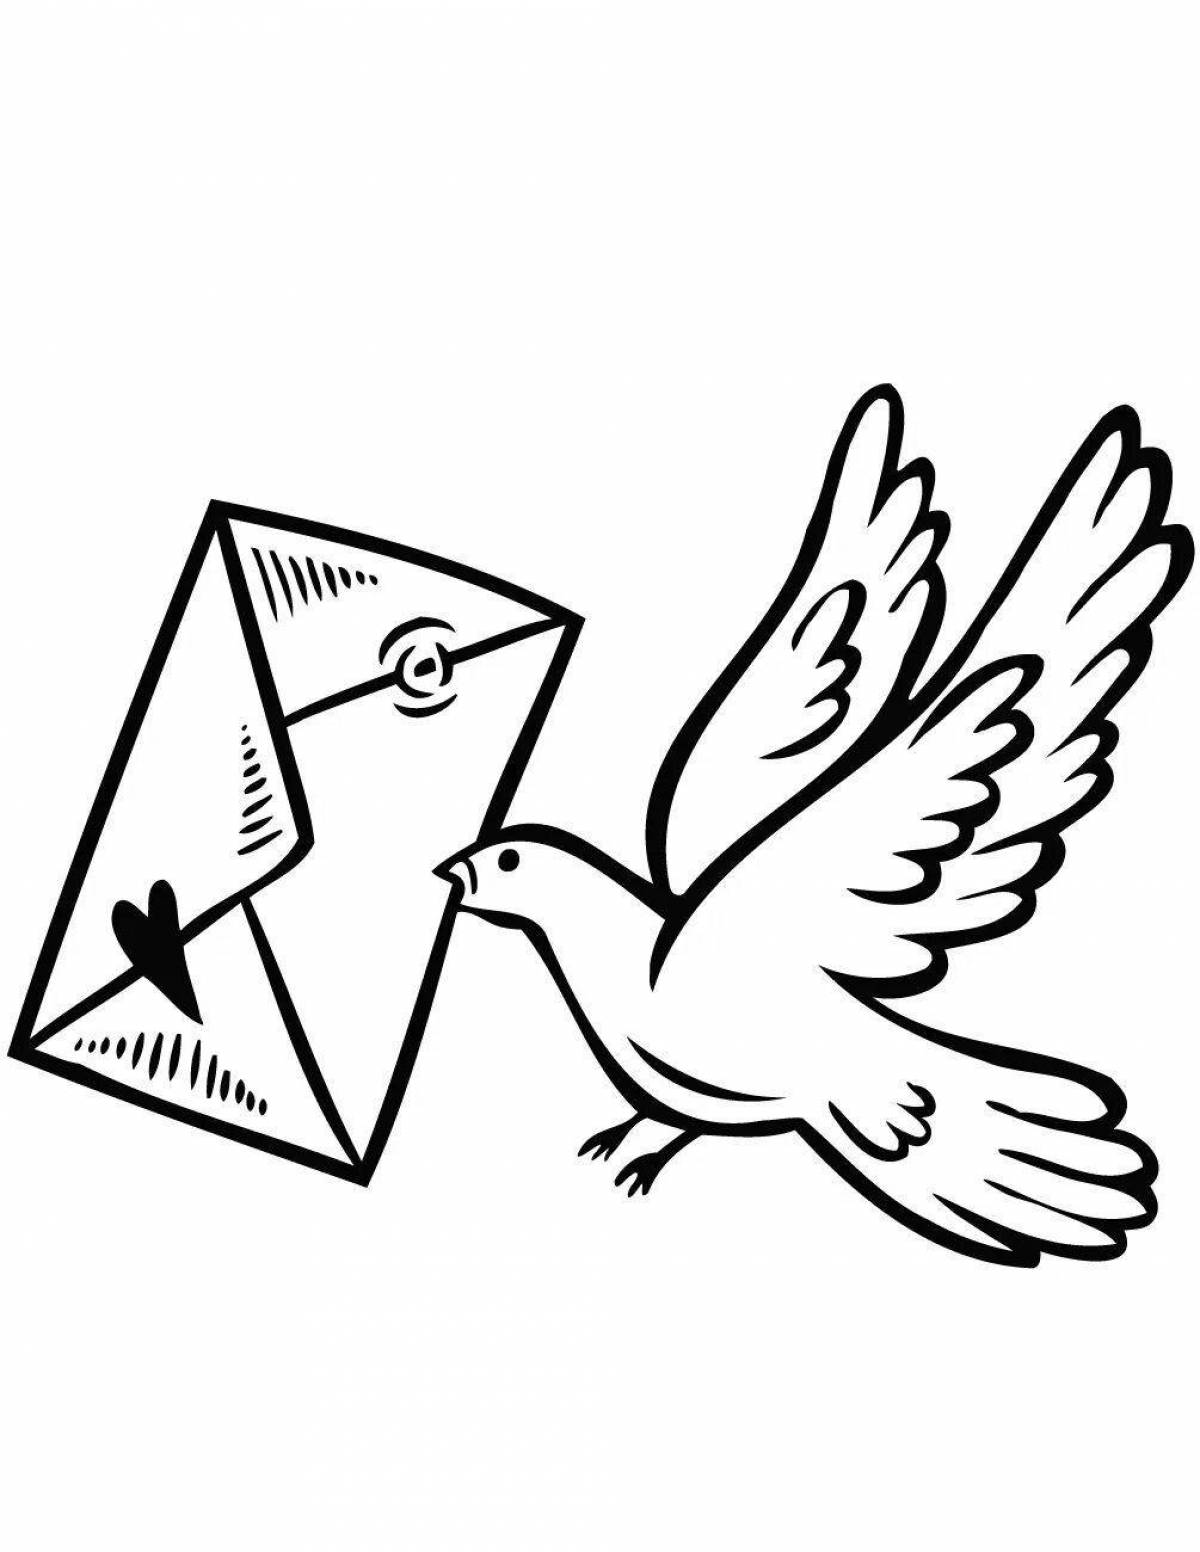 Птица с конвертом в клюве